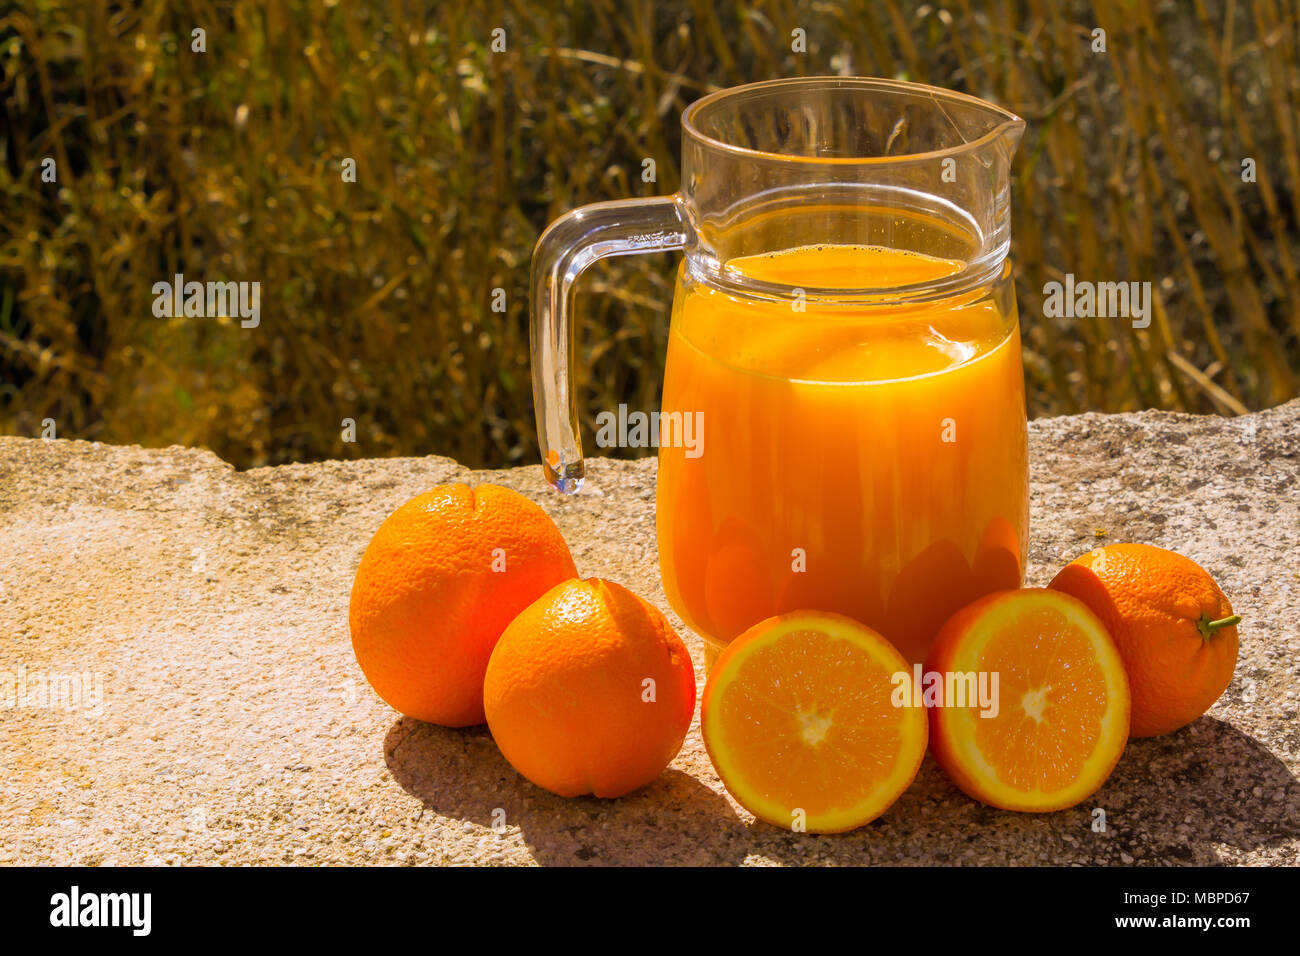 Succo d'arancia appena spremuto in una caraffa di vetro, preparata con arance fresche, all'esterno con sfondo naturale Foto Stock